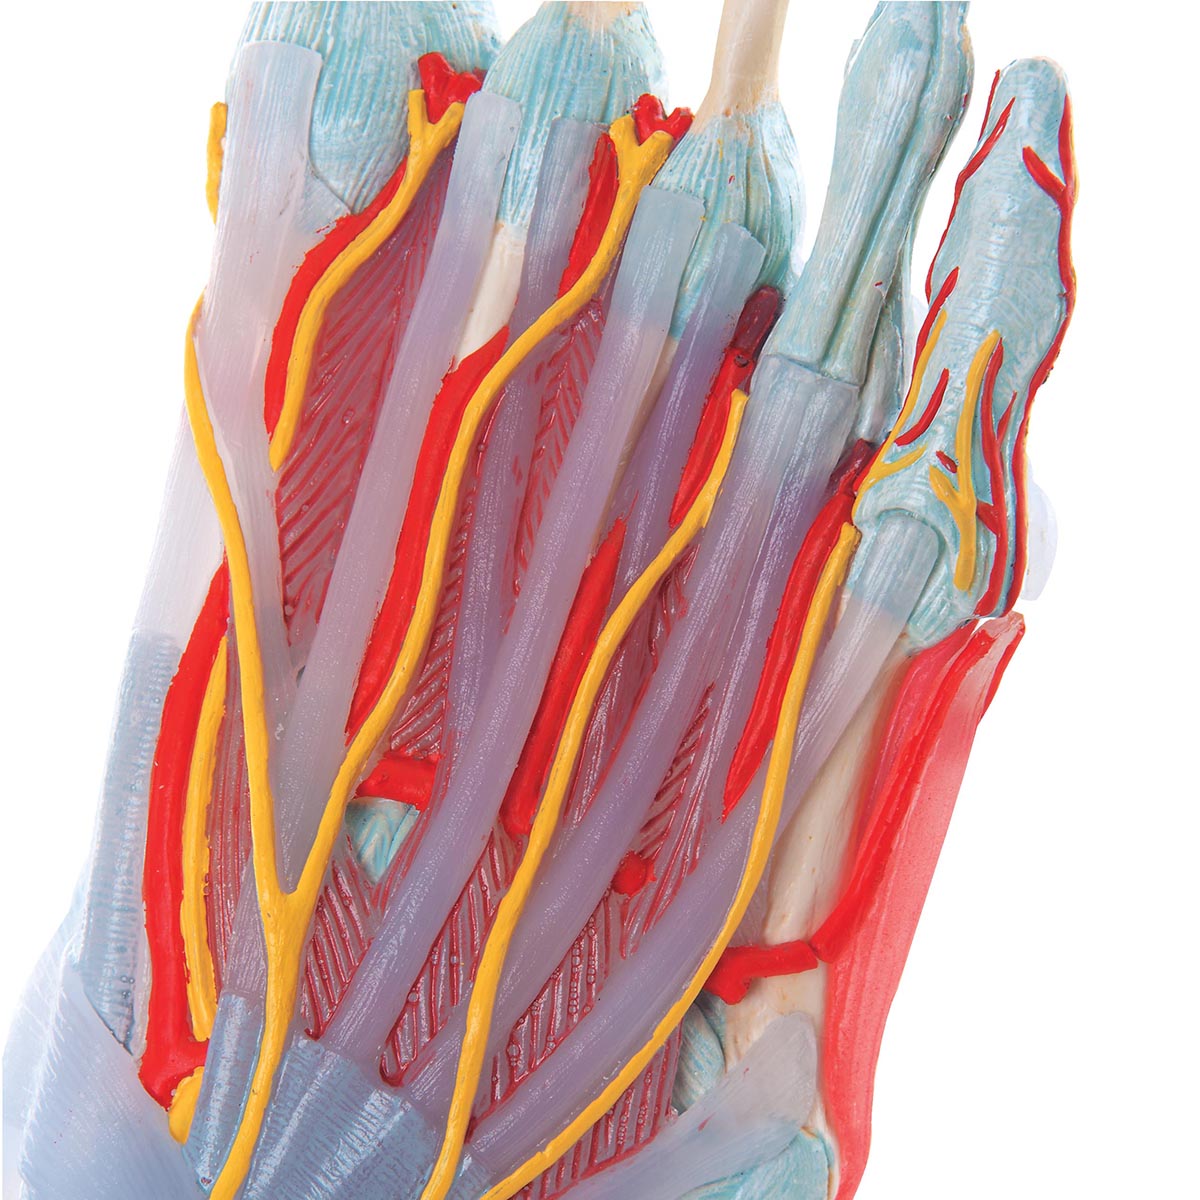 Komplet fodmodel med ledbånd, muskler, kar og nerver - kan adskilles i 6 dele